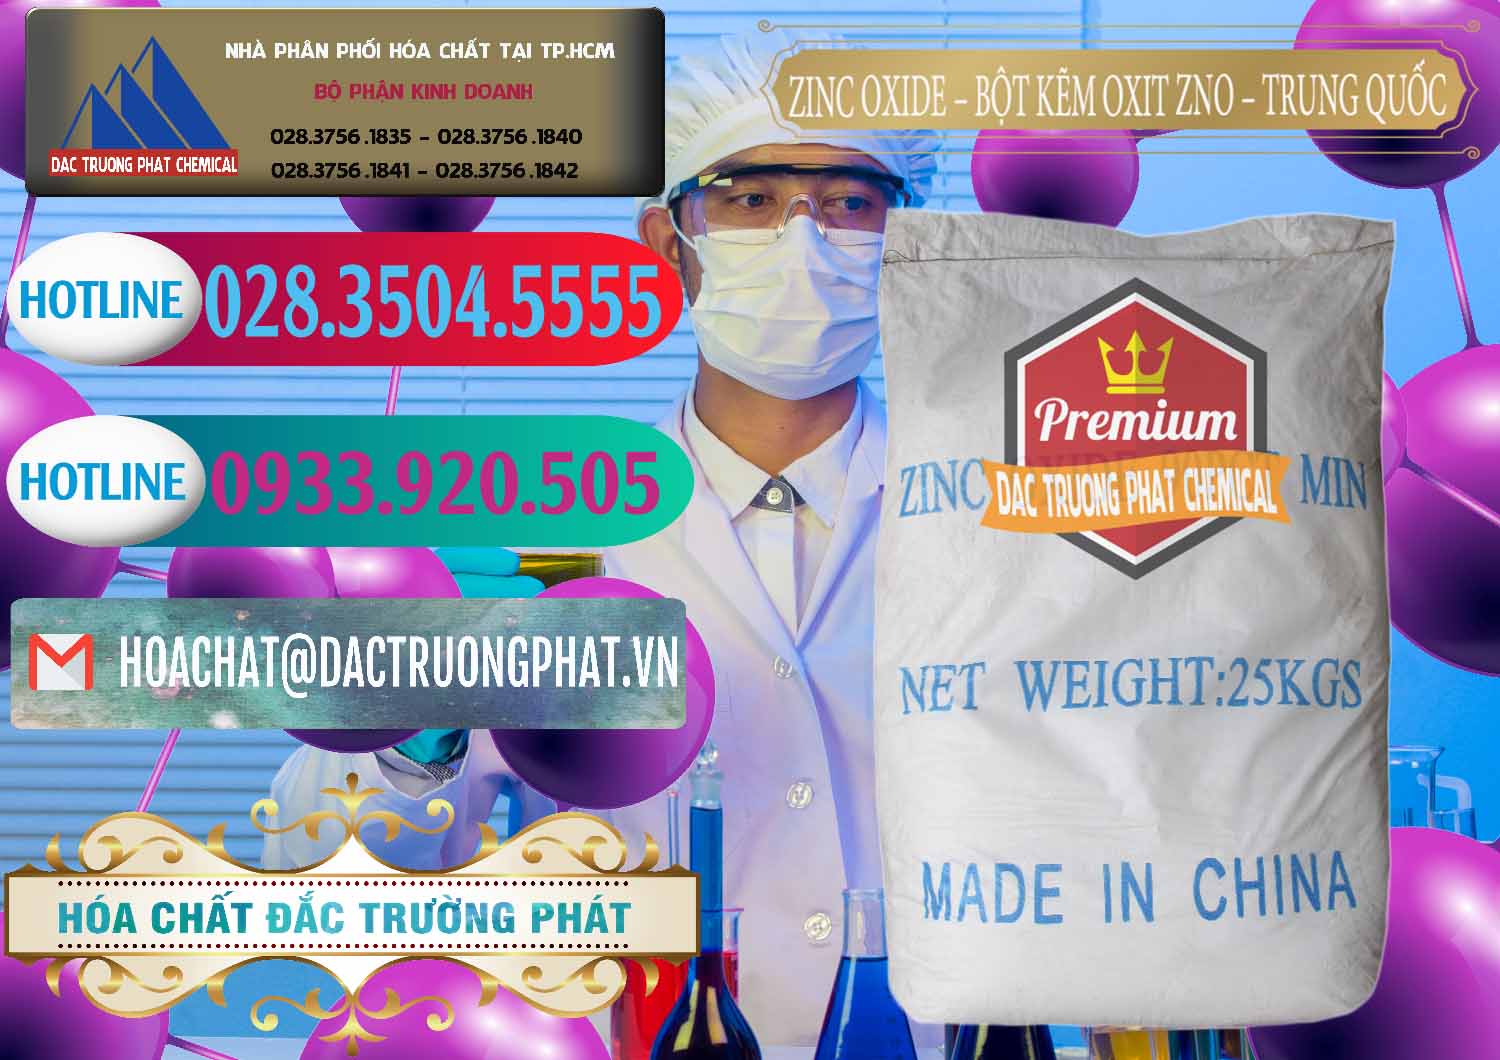 Cty kinh doanh & bán Zinc Oxide - Bột Kẽm Oxit ZNO Trung Quốc China - 0182 - Công ty cung cấp và nhập khẩu hóa chất tại TP.HCM - truongphat.vn